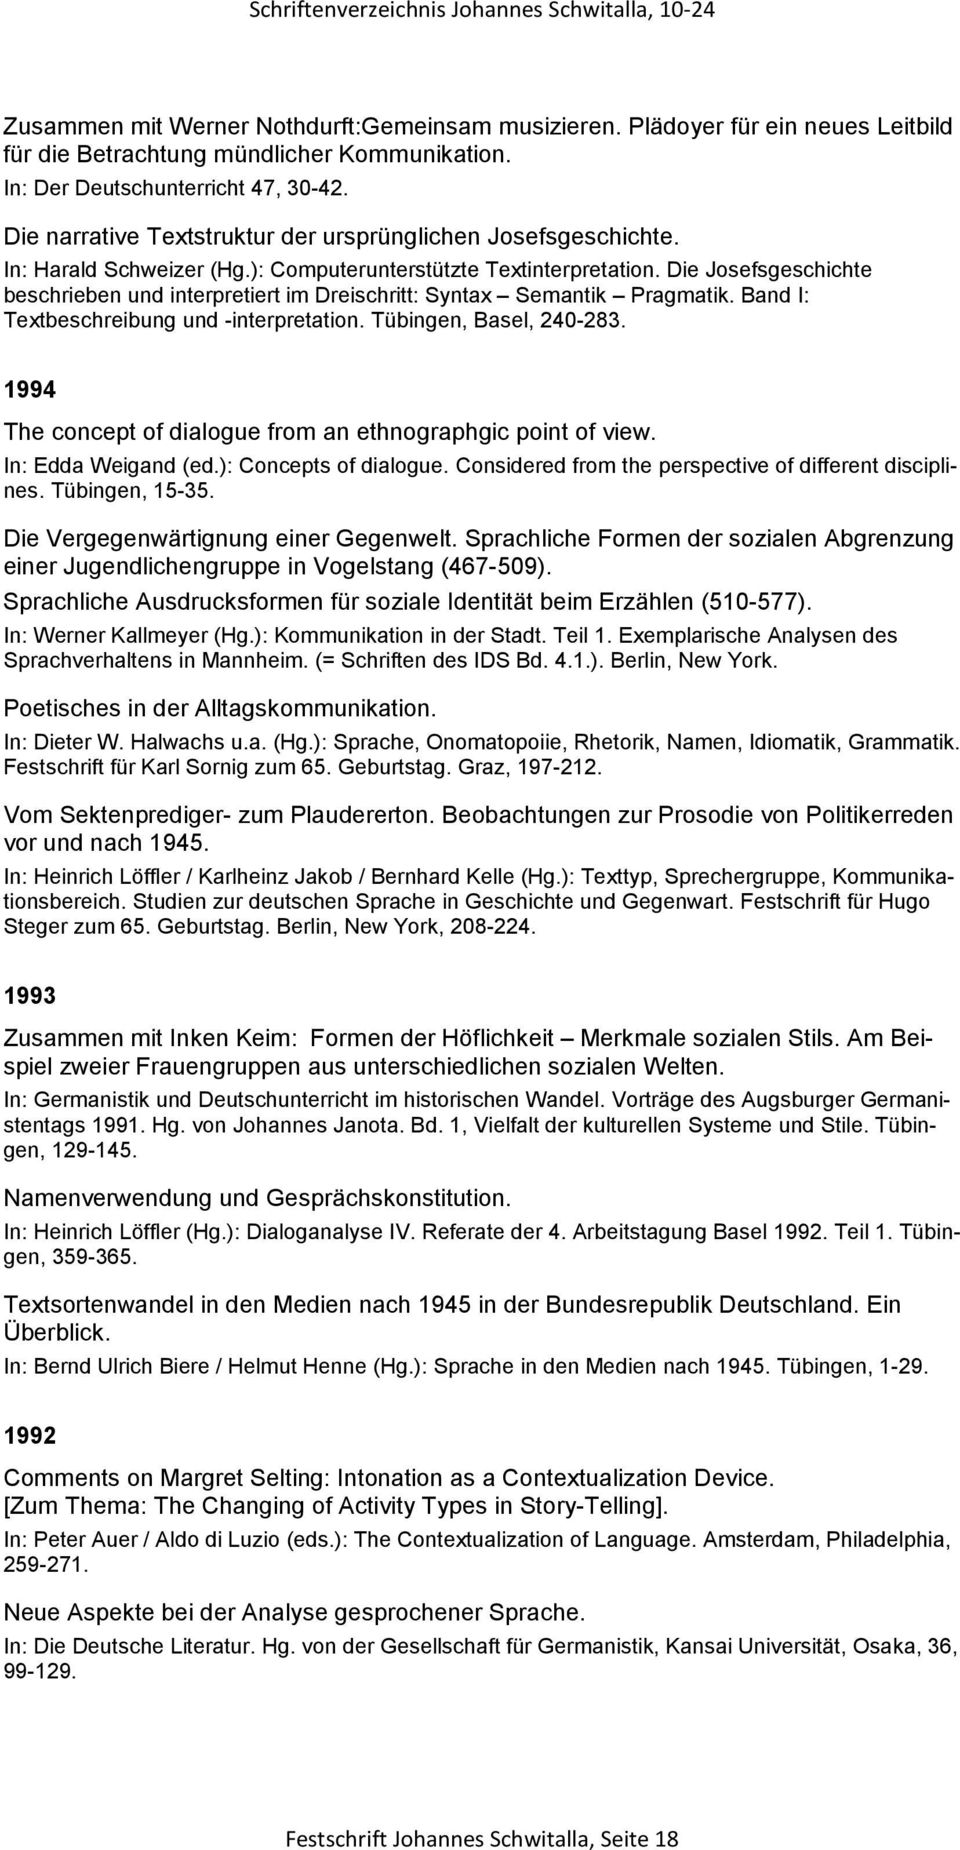 Die Josefsgeschichte beschrieben und interpretiert im Dreischritt: Syntax Semantik Pragmatik. Band I: Textbeschreibung und -interpretation. Tübingen, Basel, 240-283.